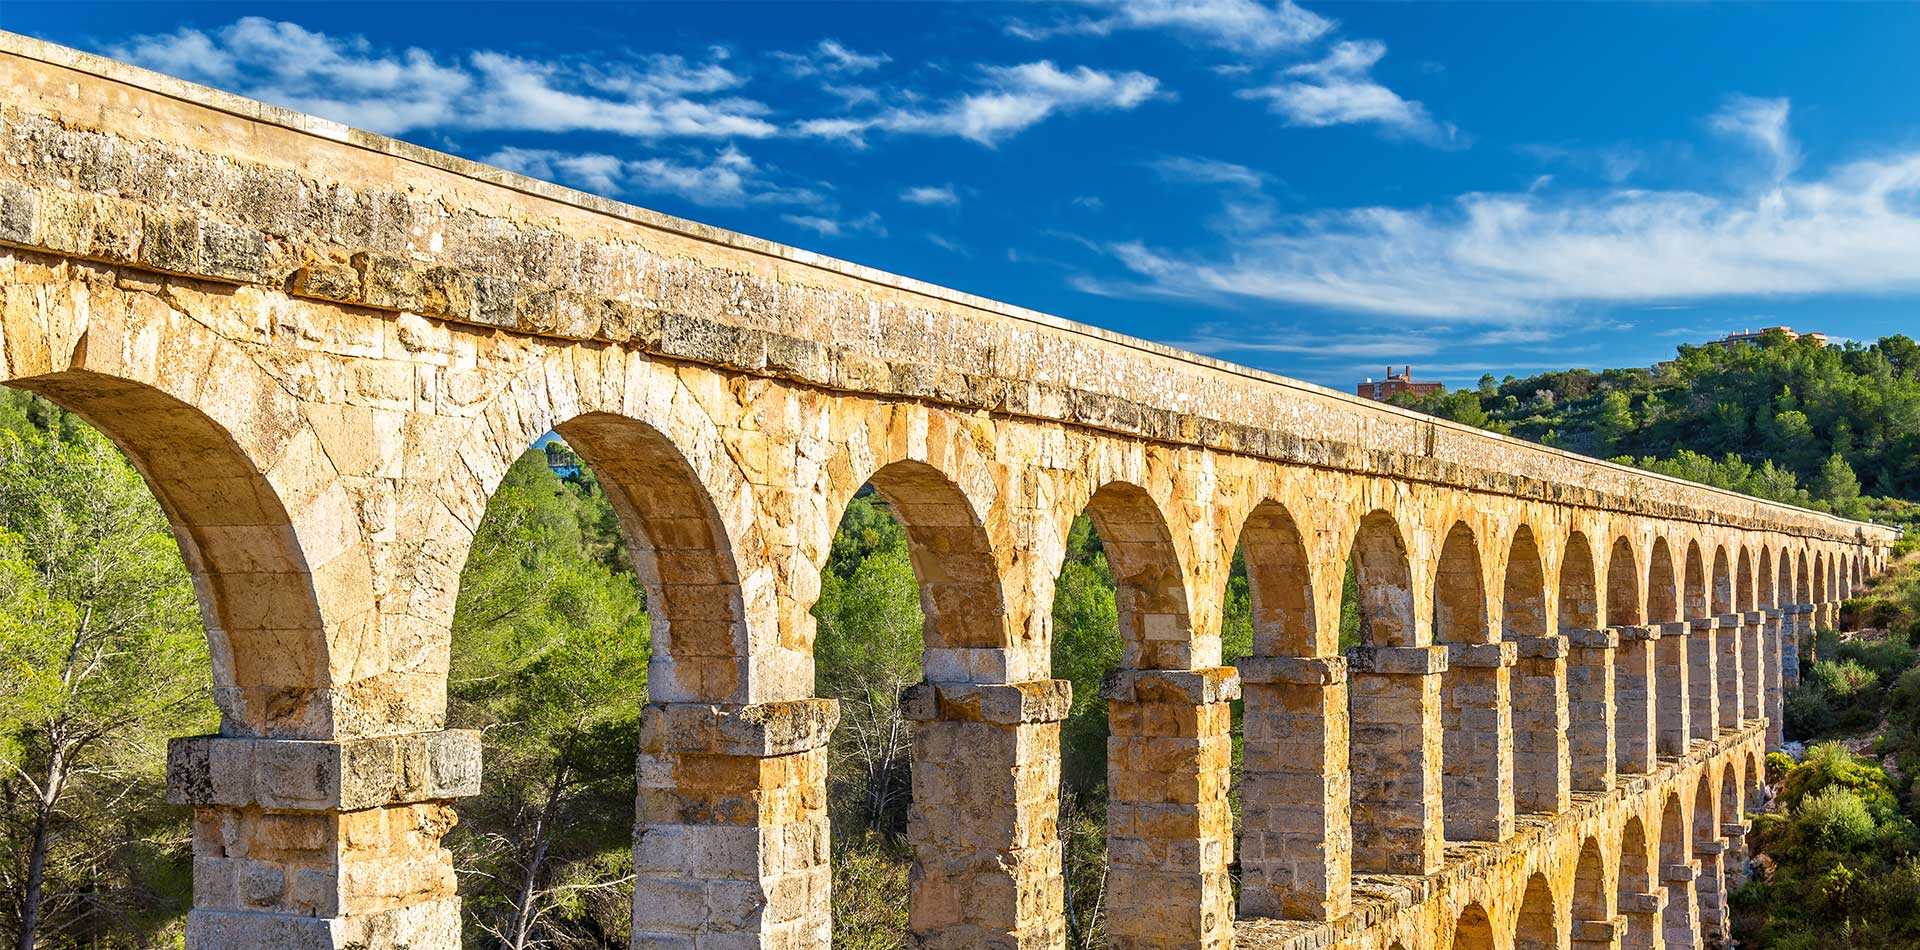 Les Ferreres Aqueduct, Tarraco, Tarragona, Spain